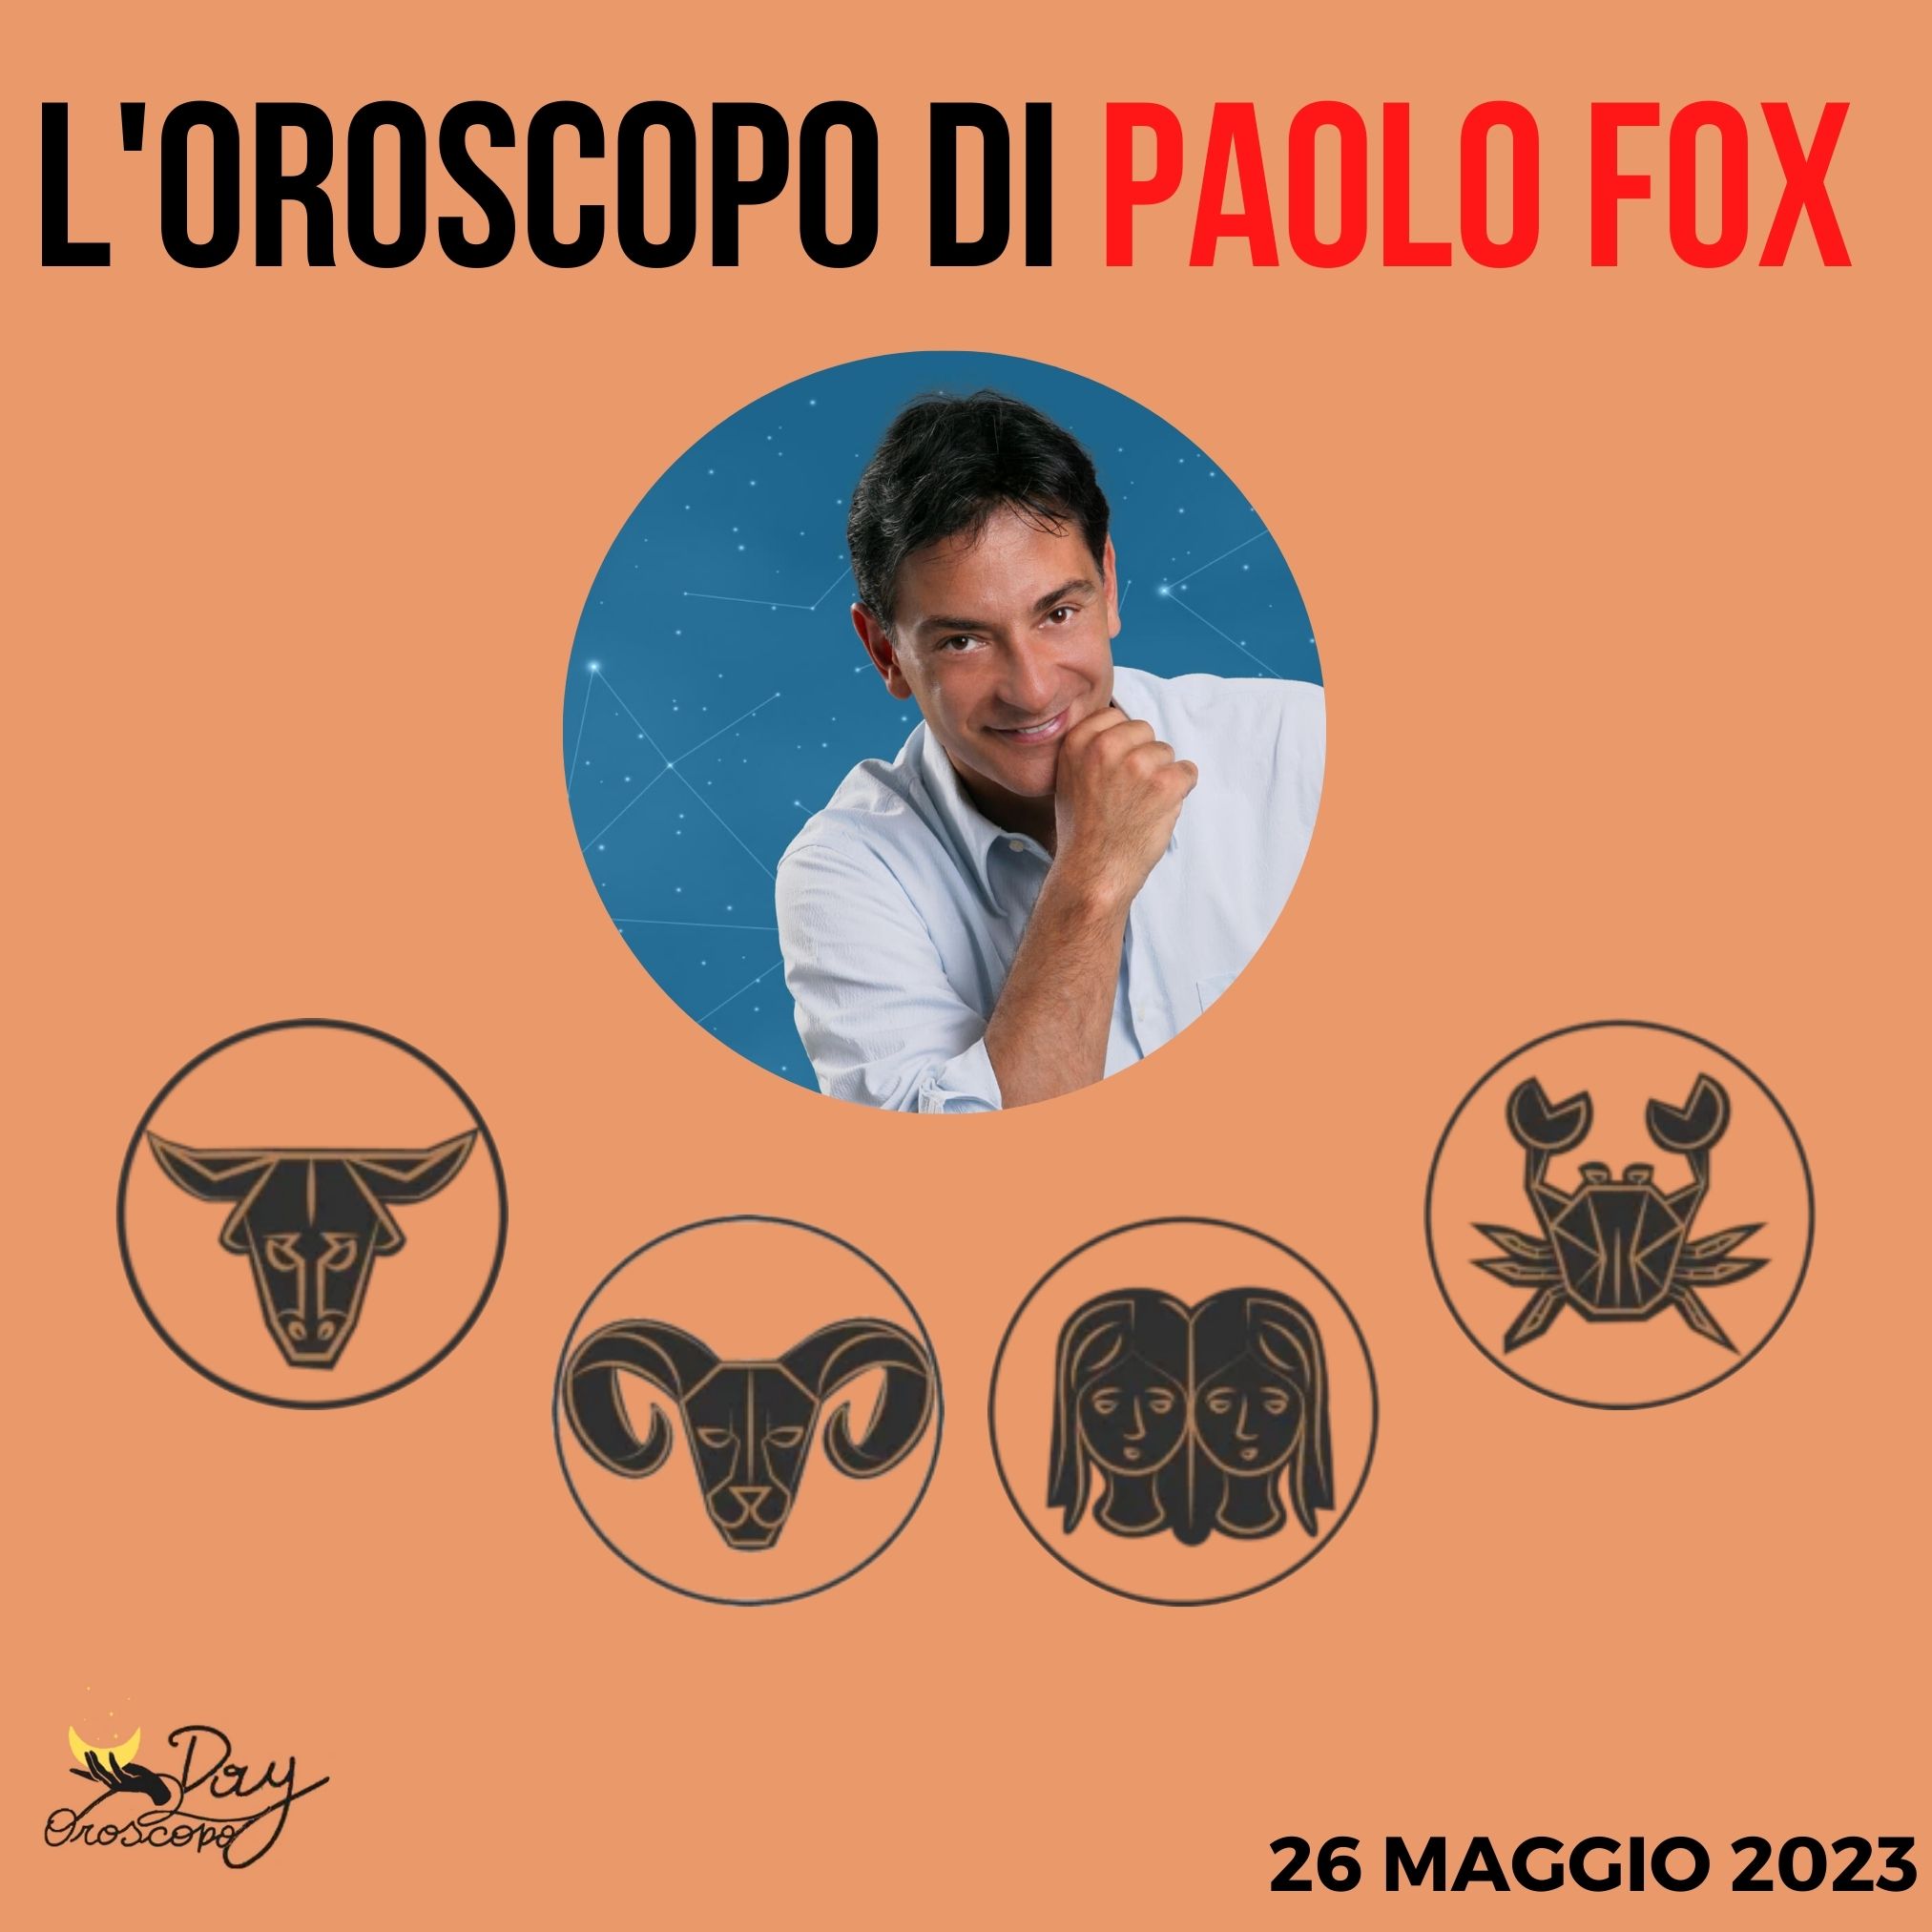 Oroscopo oggi domani Paolo Fox 26 maggio Toro Ariete Gemelli Cancro